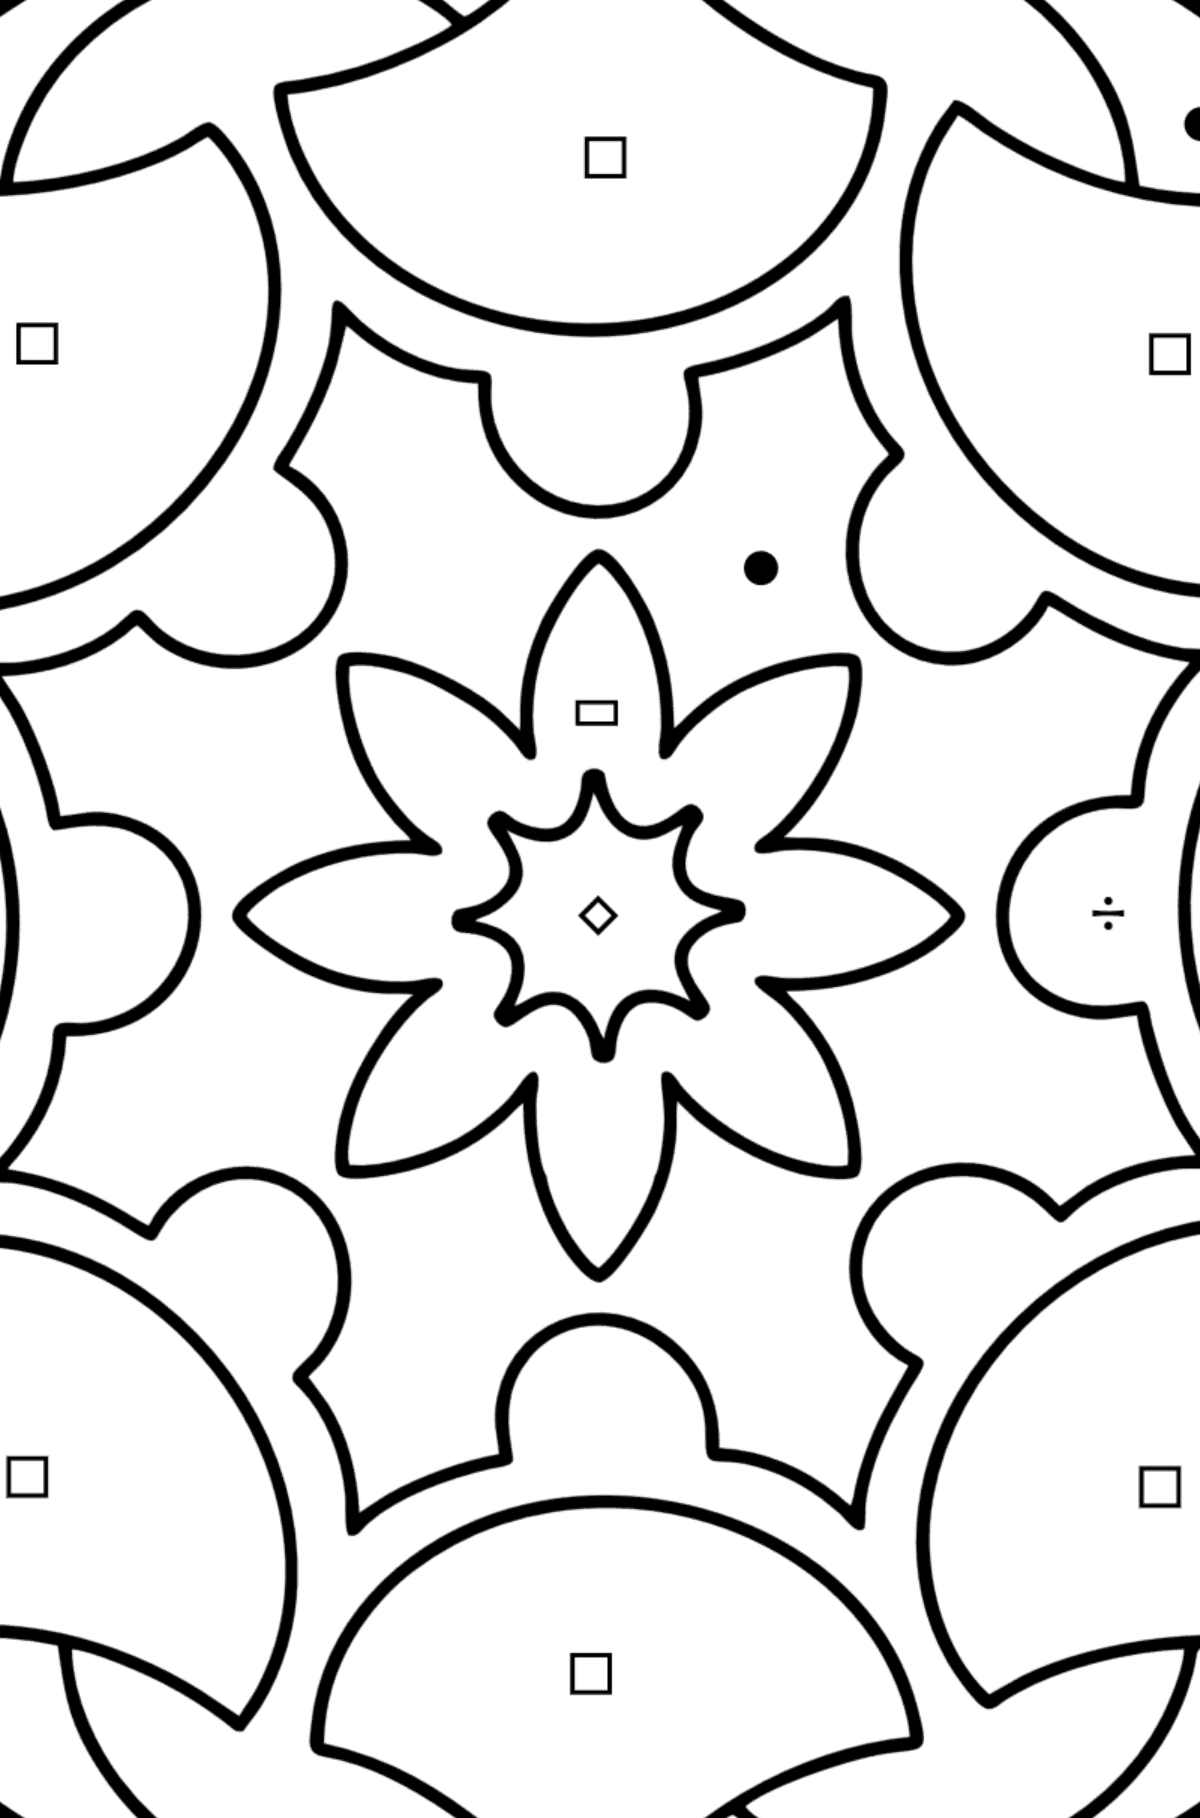 Omalovánka Mandala 7 - Omalovánka podle Symbolů a Geometrickým Tvarům pro děti